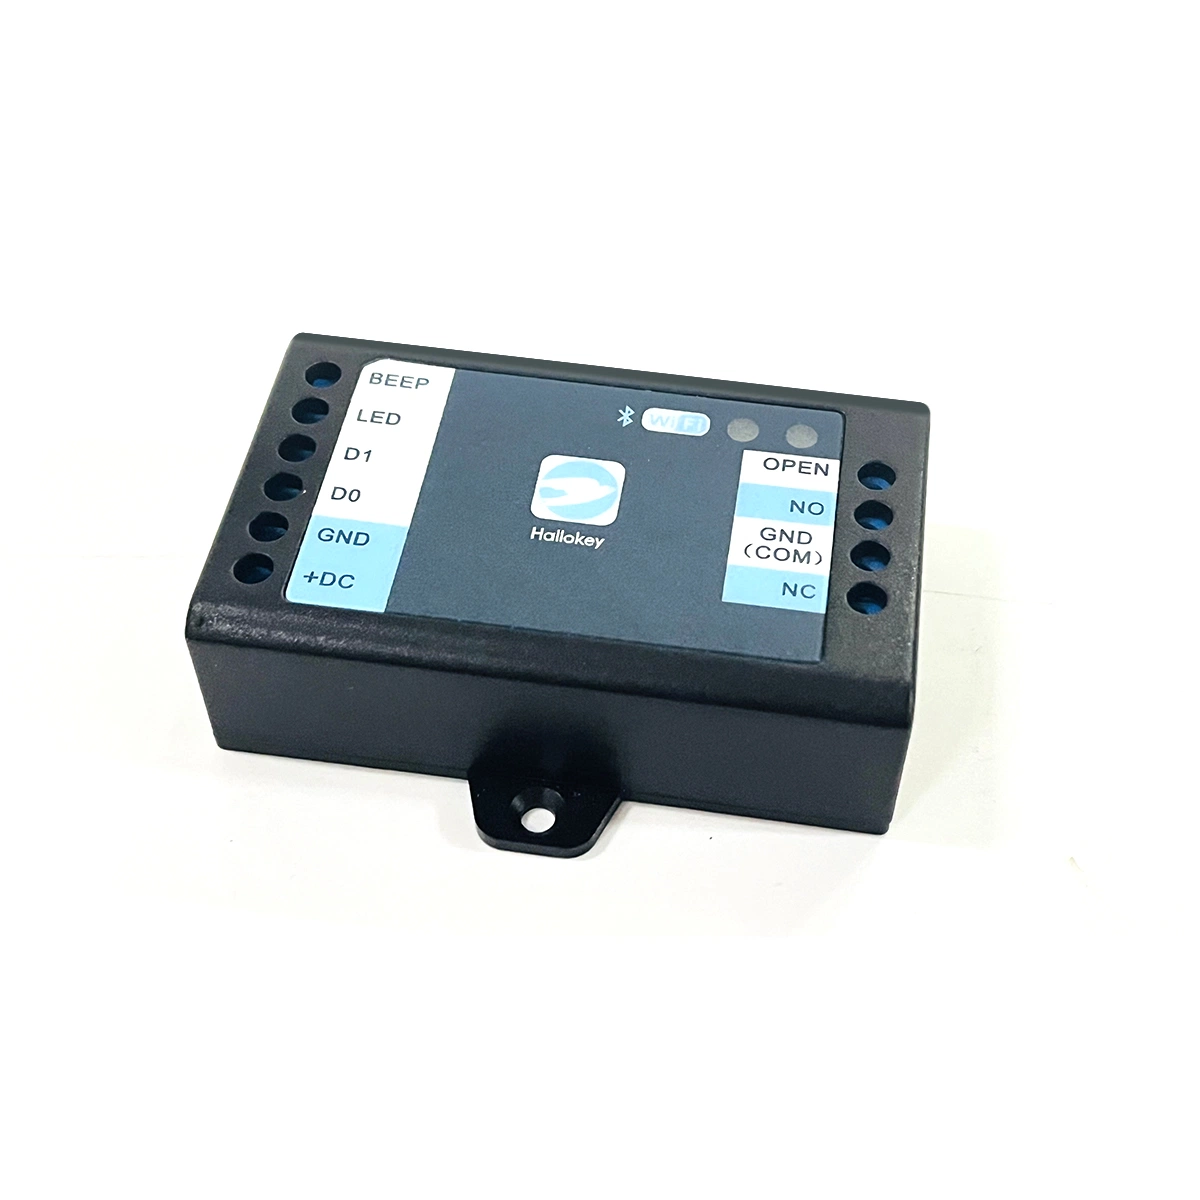 Sistema de control de acceso remoto de puerta automático mediante red WiFi y aplicación de teléfono inteligente con lector de tarjetas de salida Wiegand para el hogar y la oficina